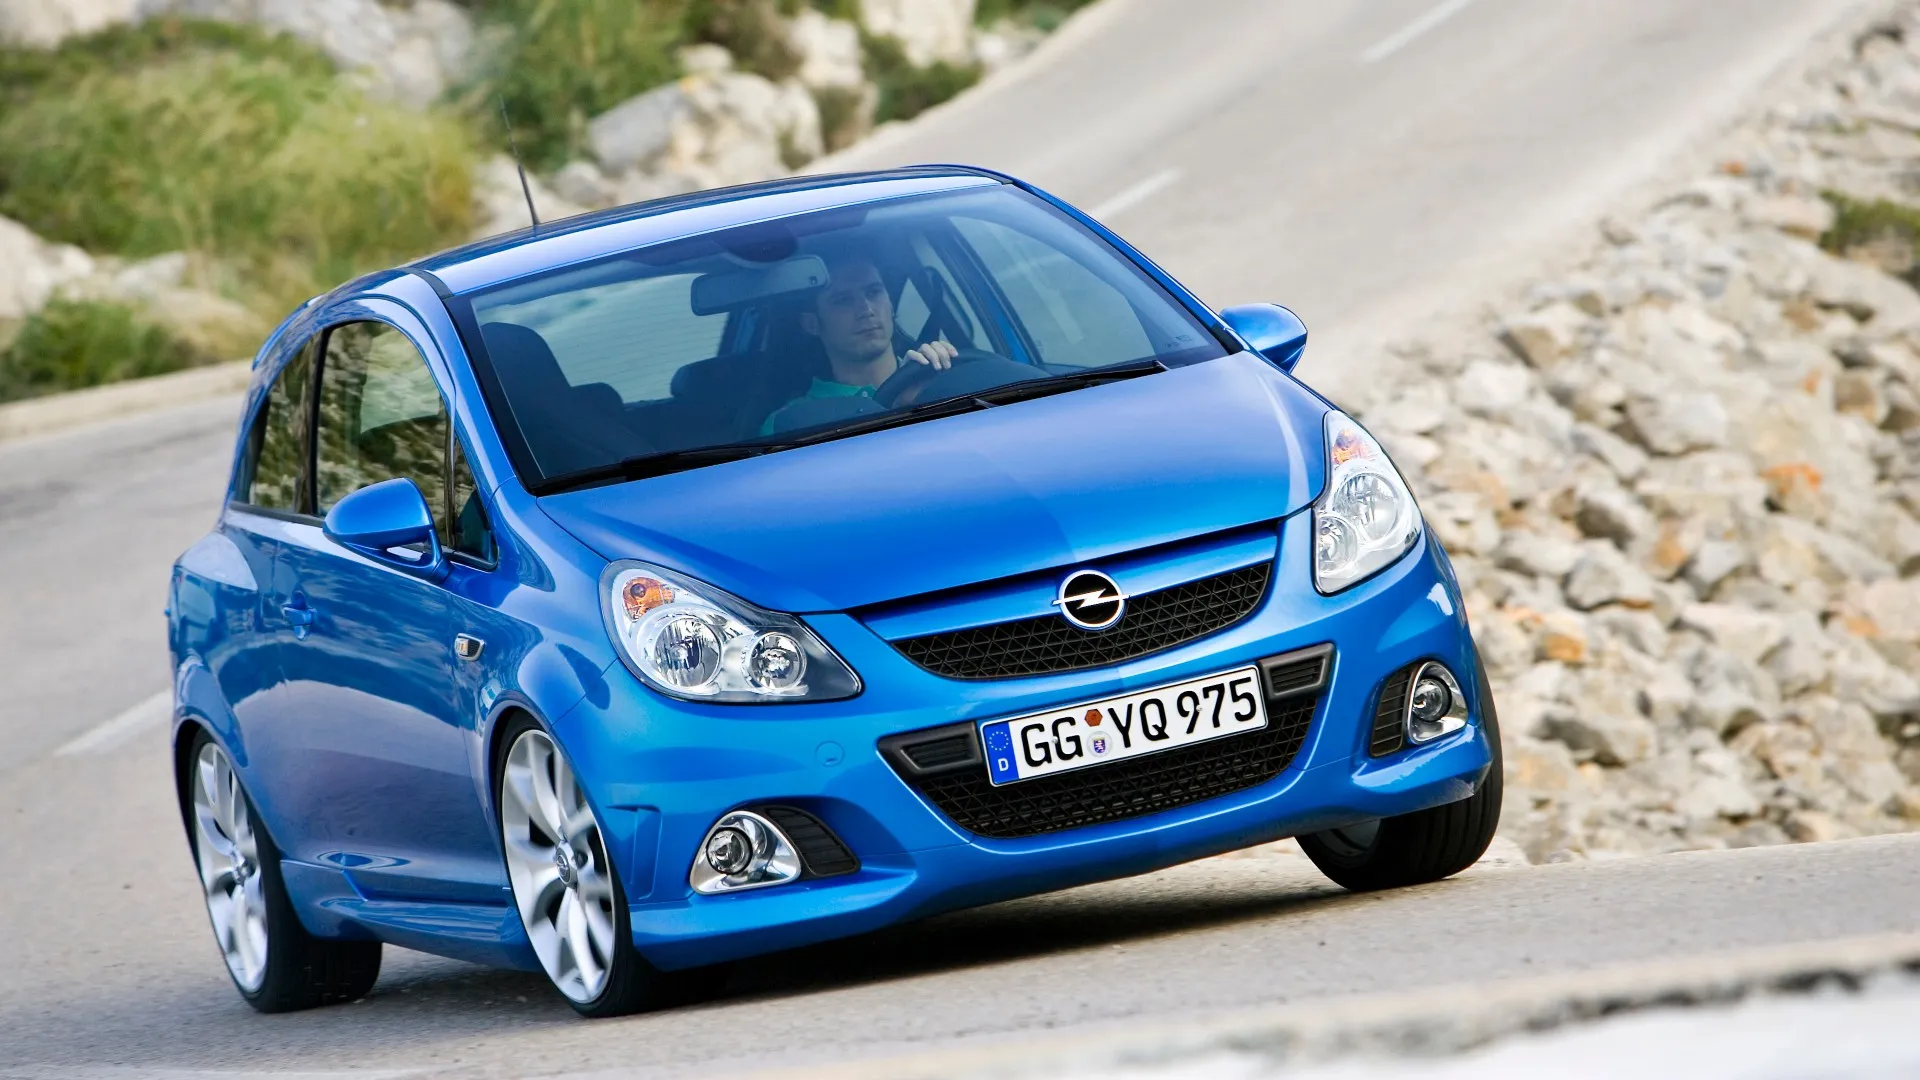 Coche del día: Opel Corsa OPC (D)